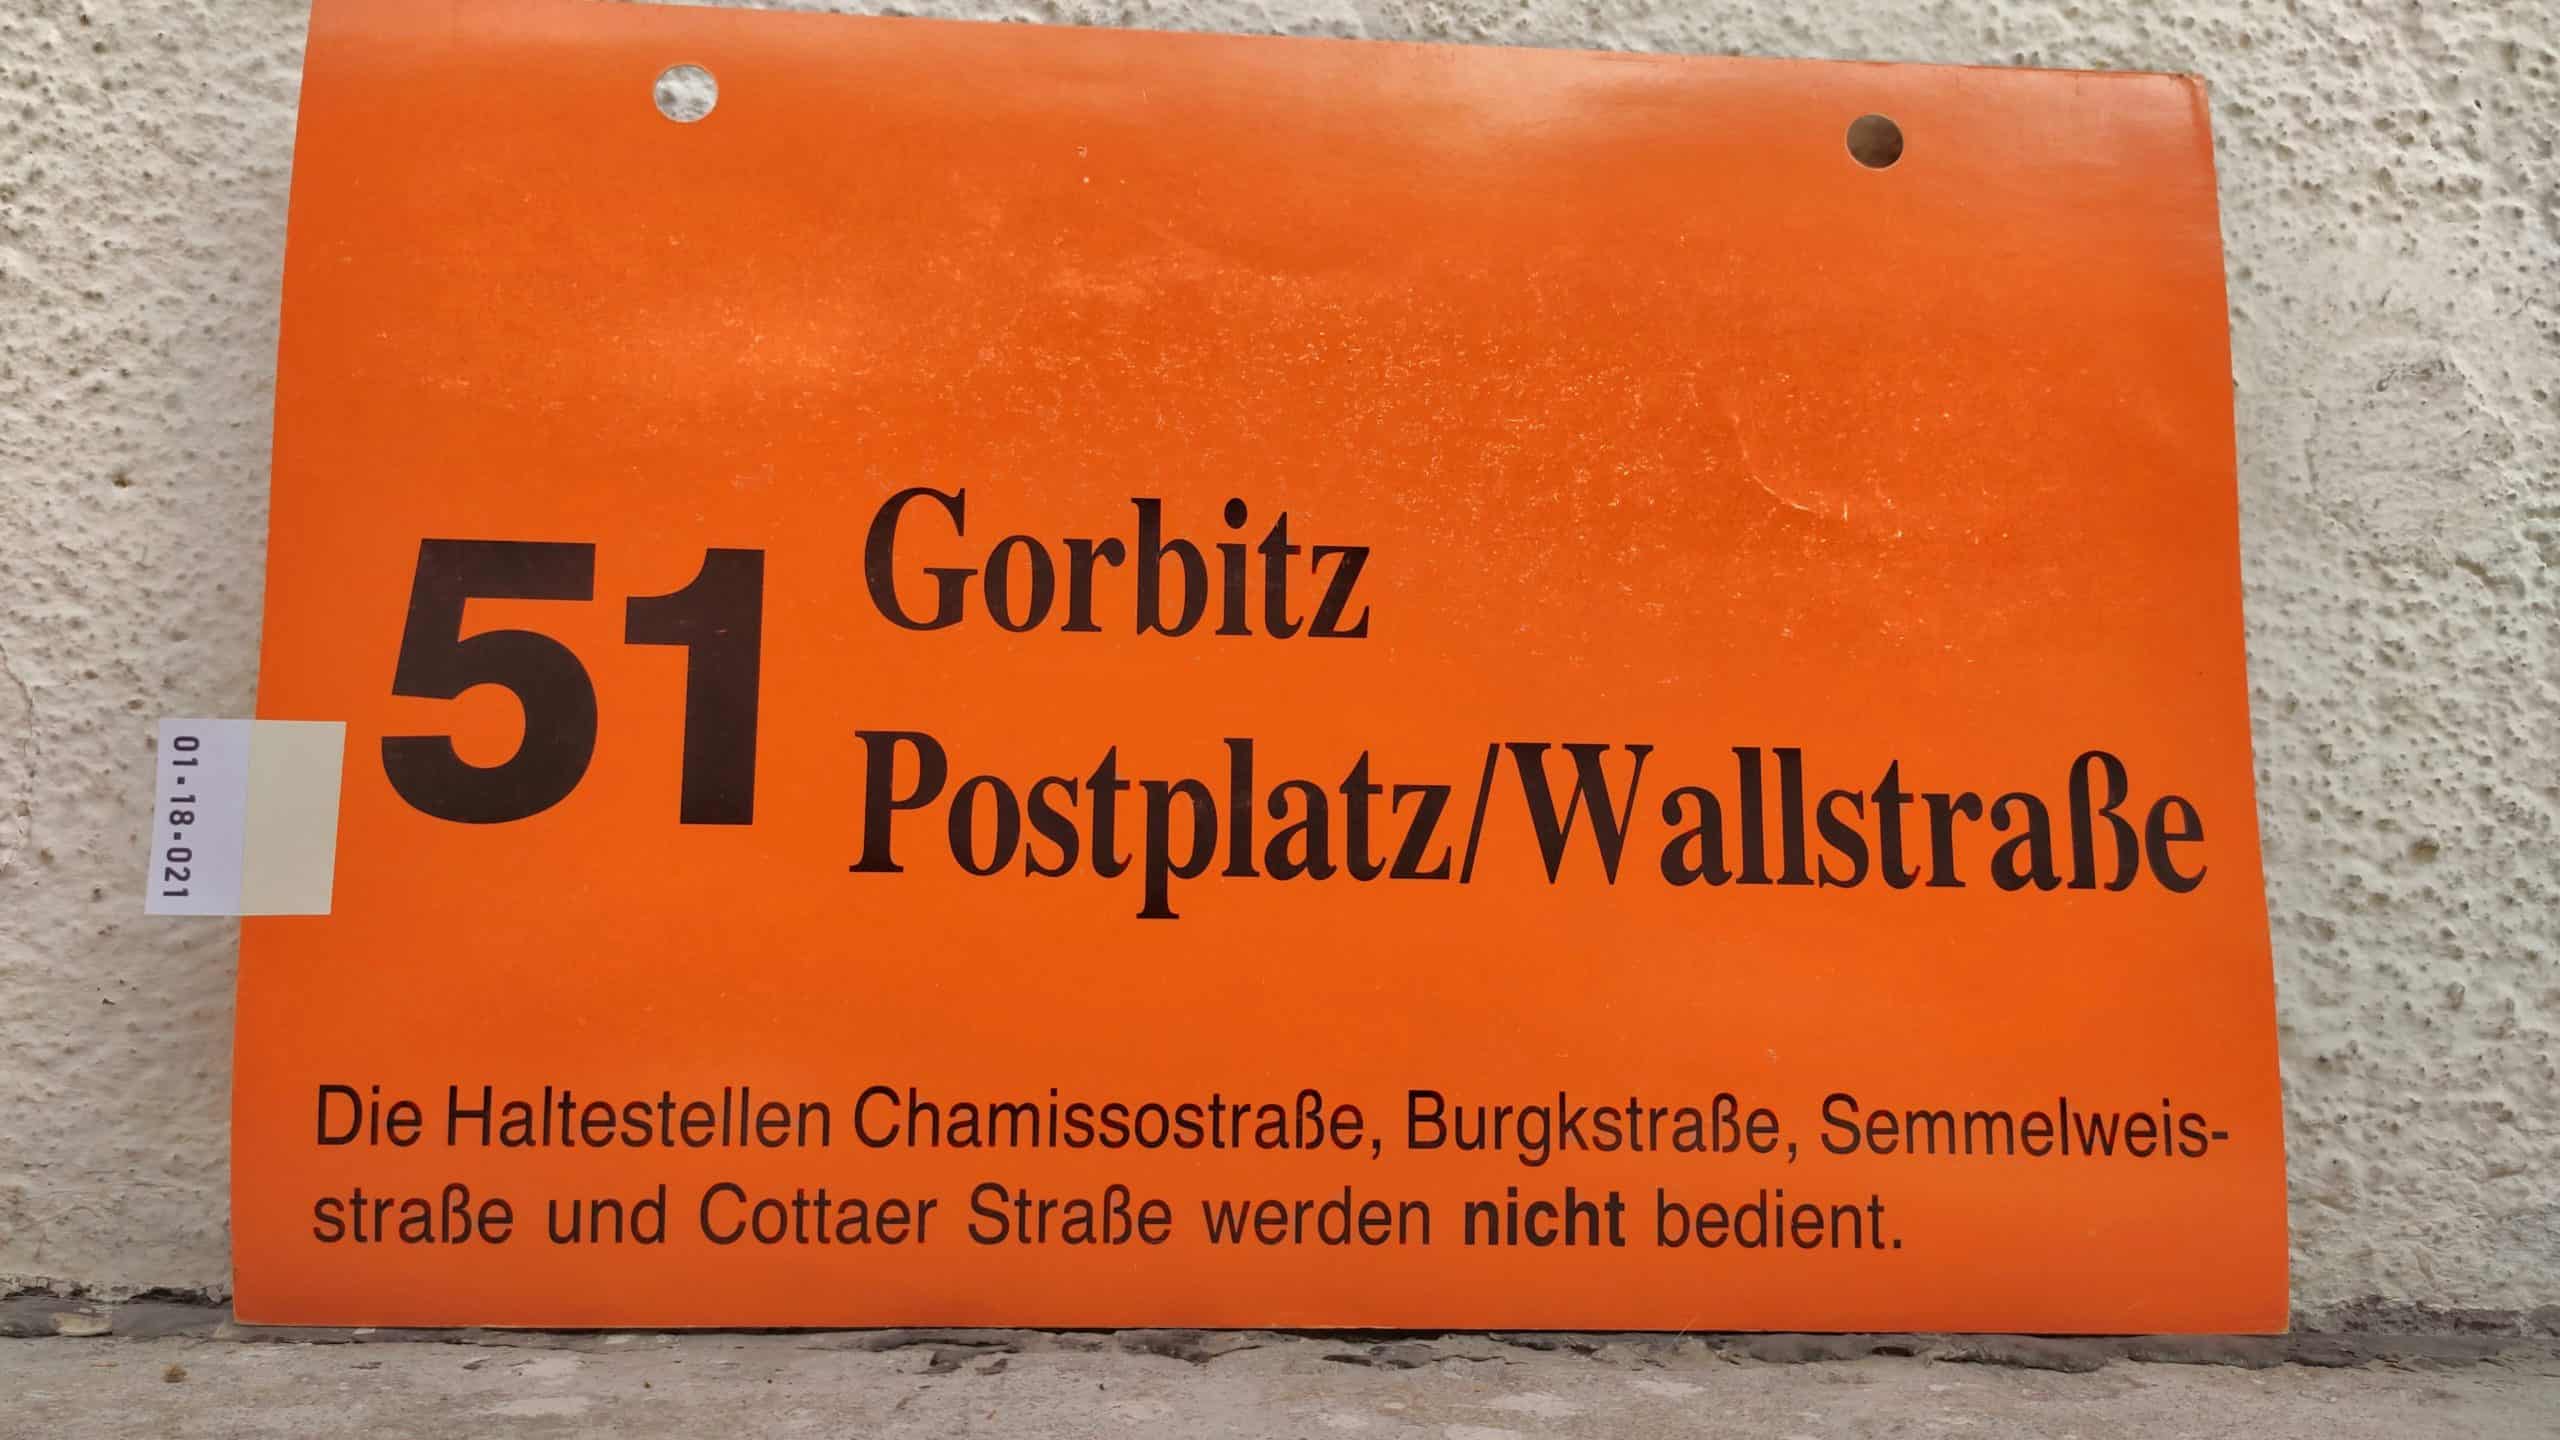 51 Gorbitz – Postplatz/Wallstraße